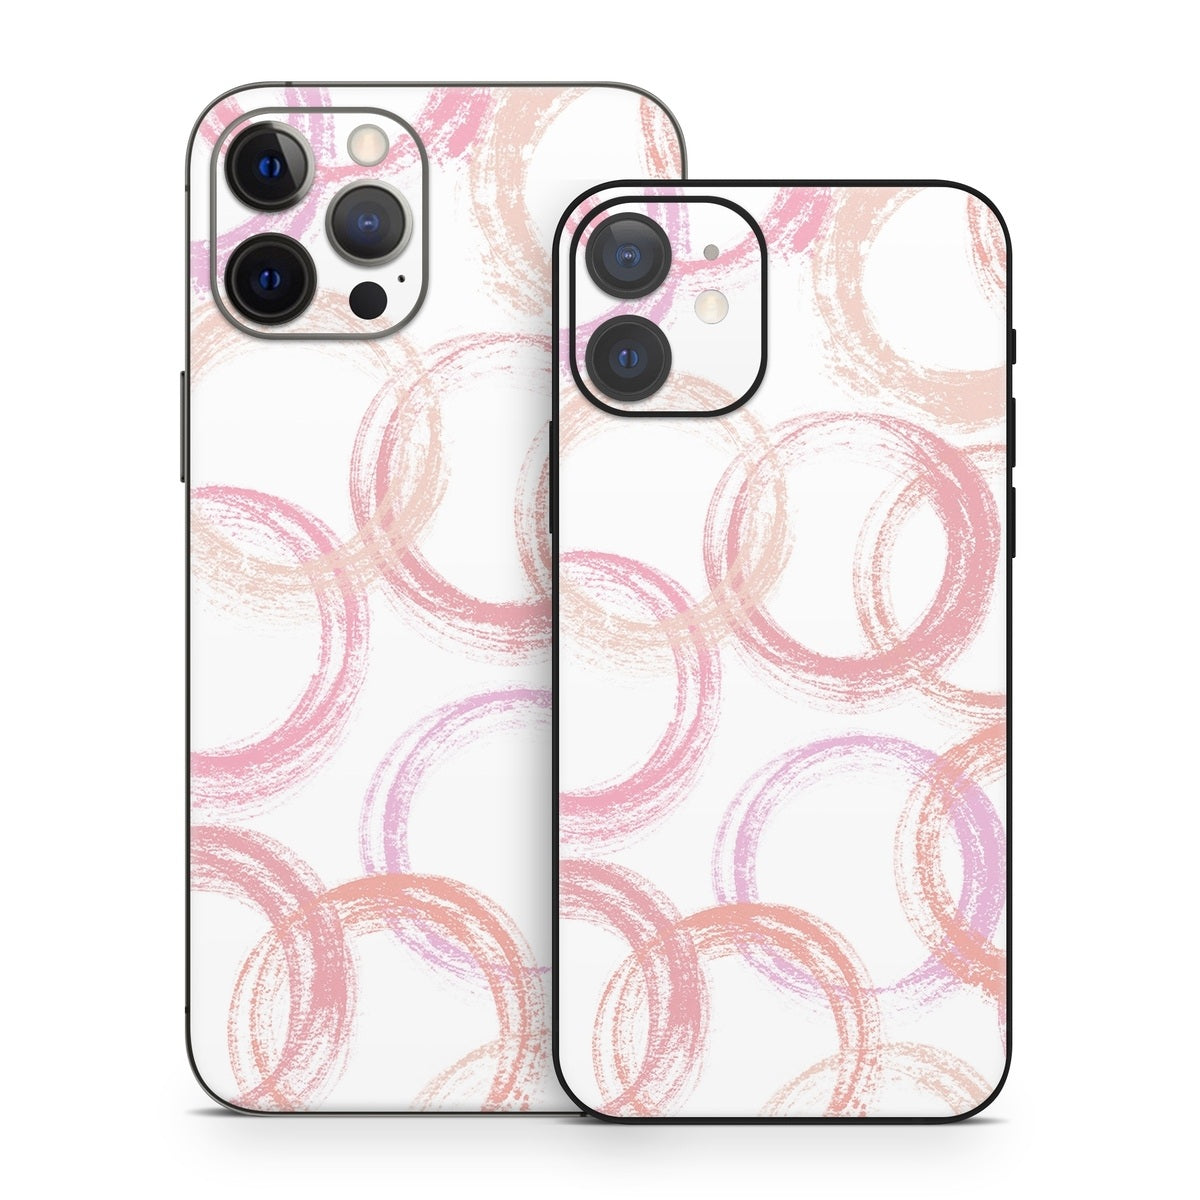 Pink Circles - Apple iPhone 12 Skin